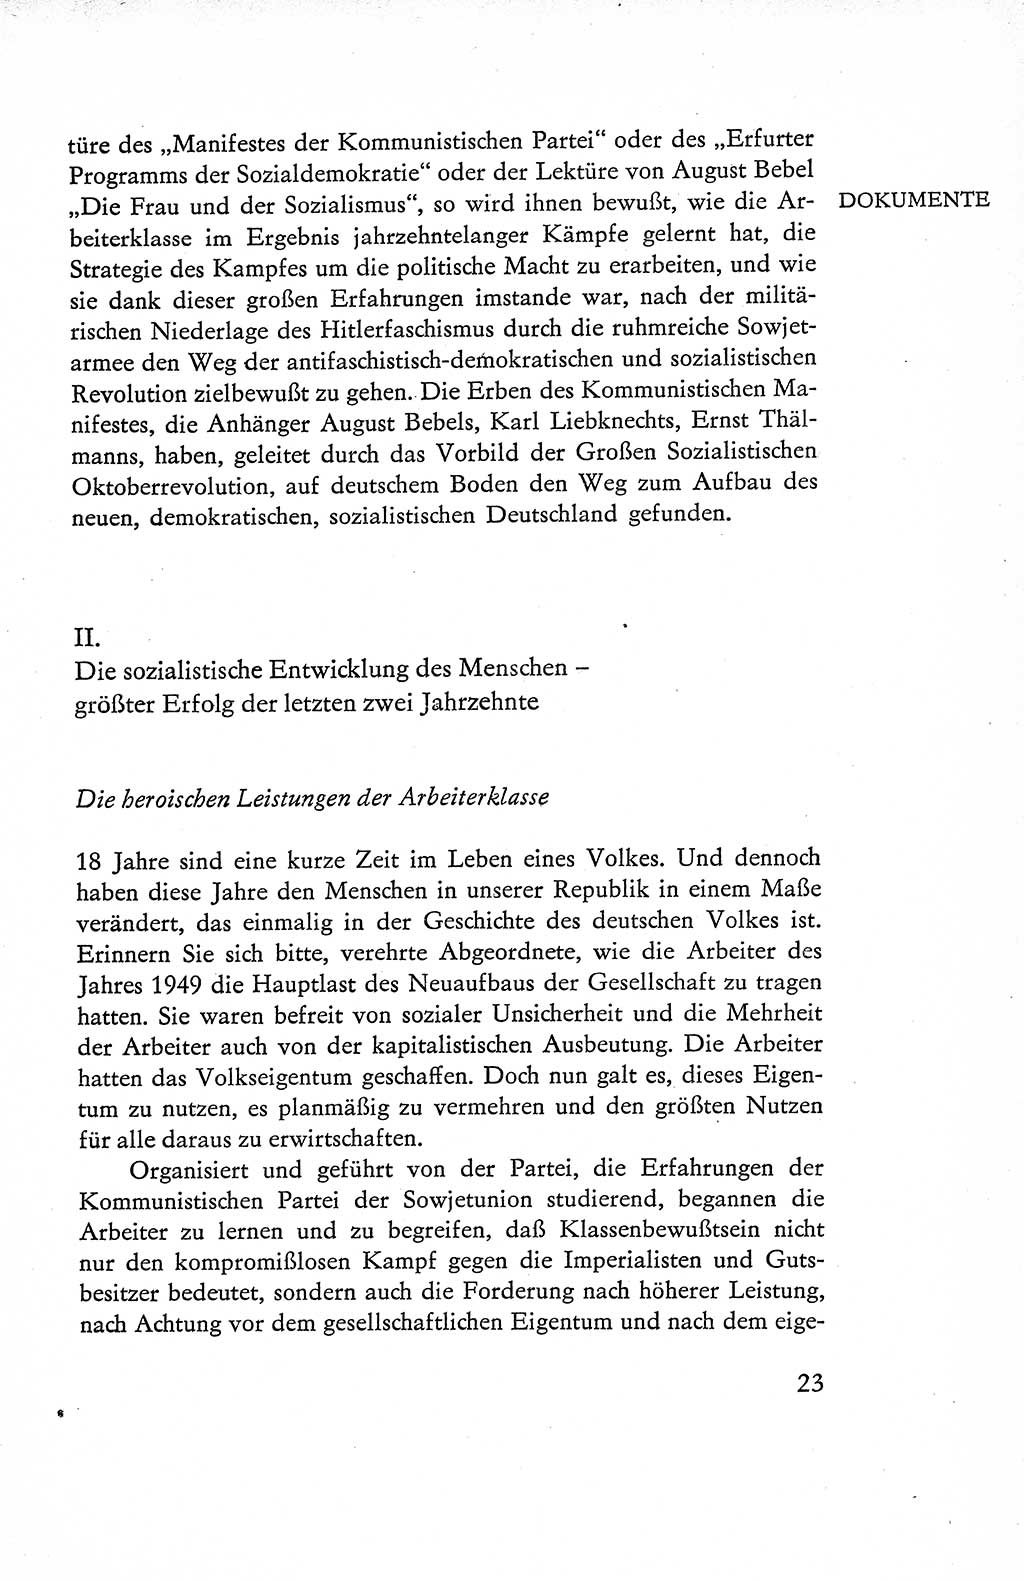 Verfassung der Deutschen Demokratischen Republik (DDR), Dokumente, Kommentar 1969, Band 1, Seite 23 (Verf. DDR Dok. Komm. 1969, Bd. 1, S. 23)